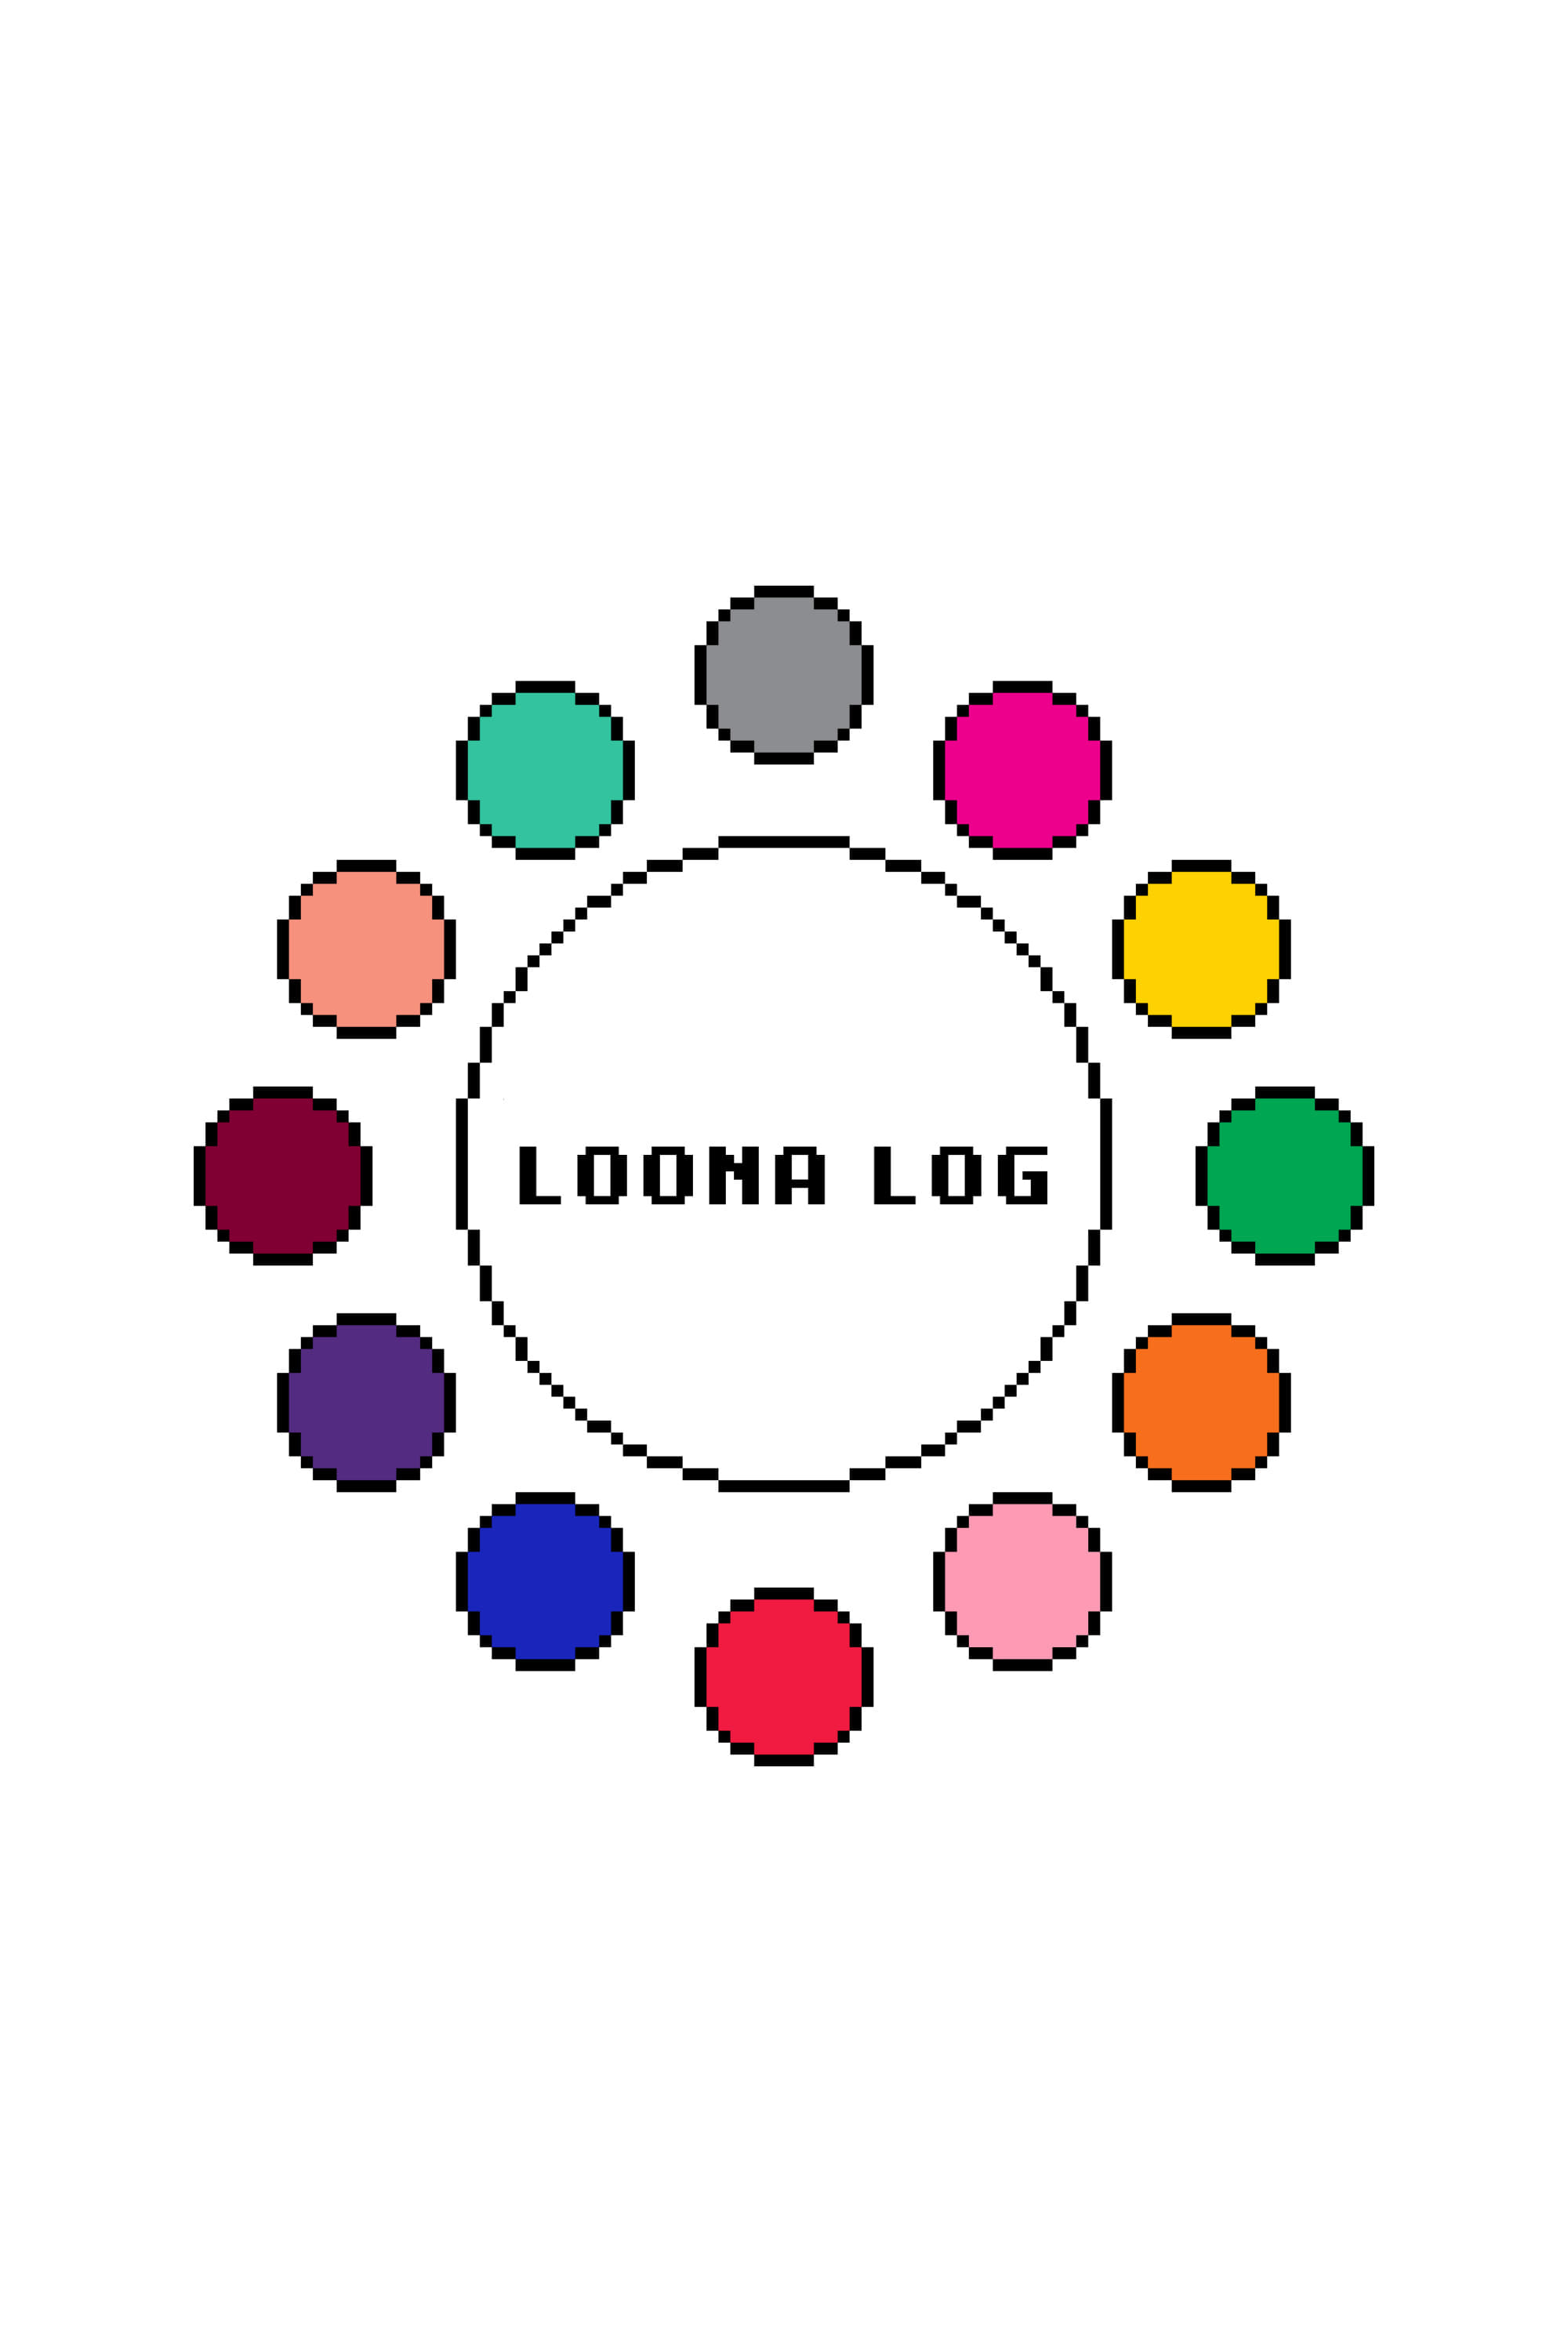 LOONA Log